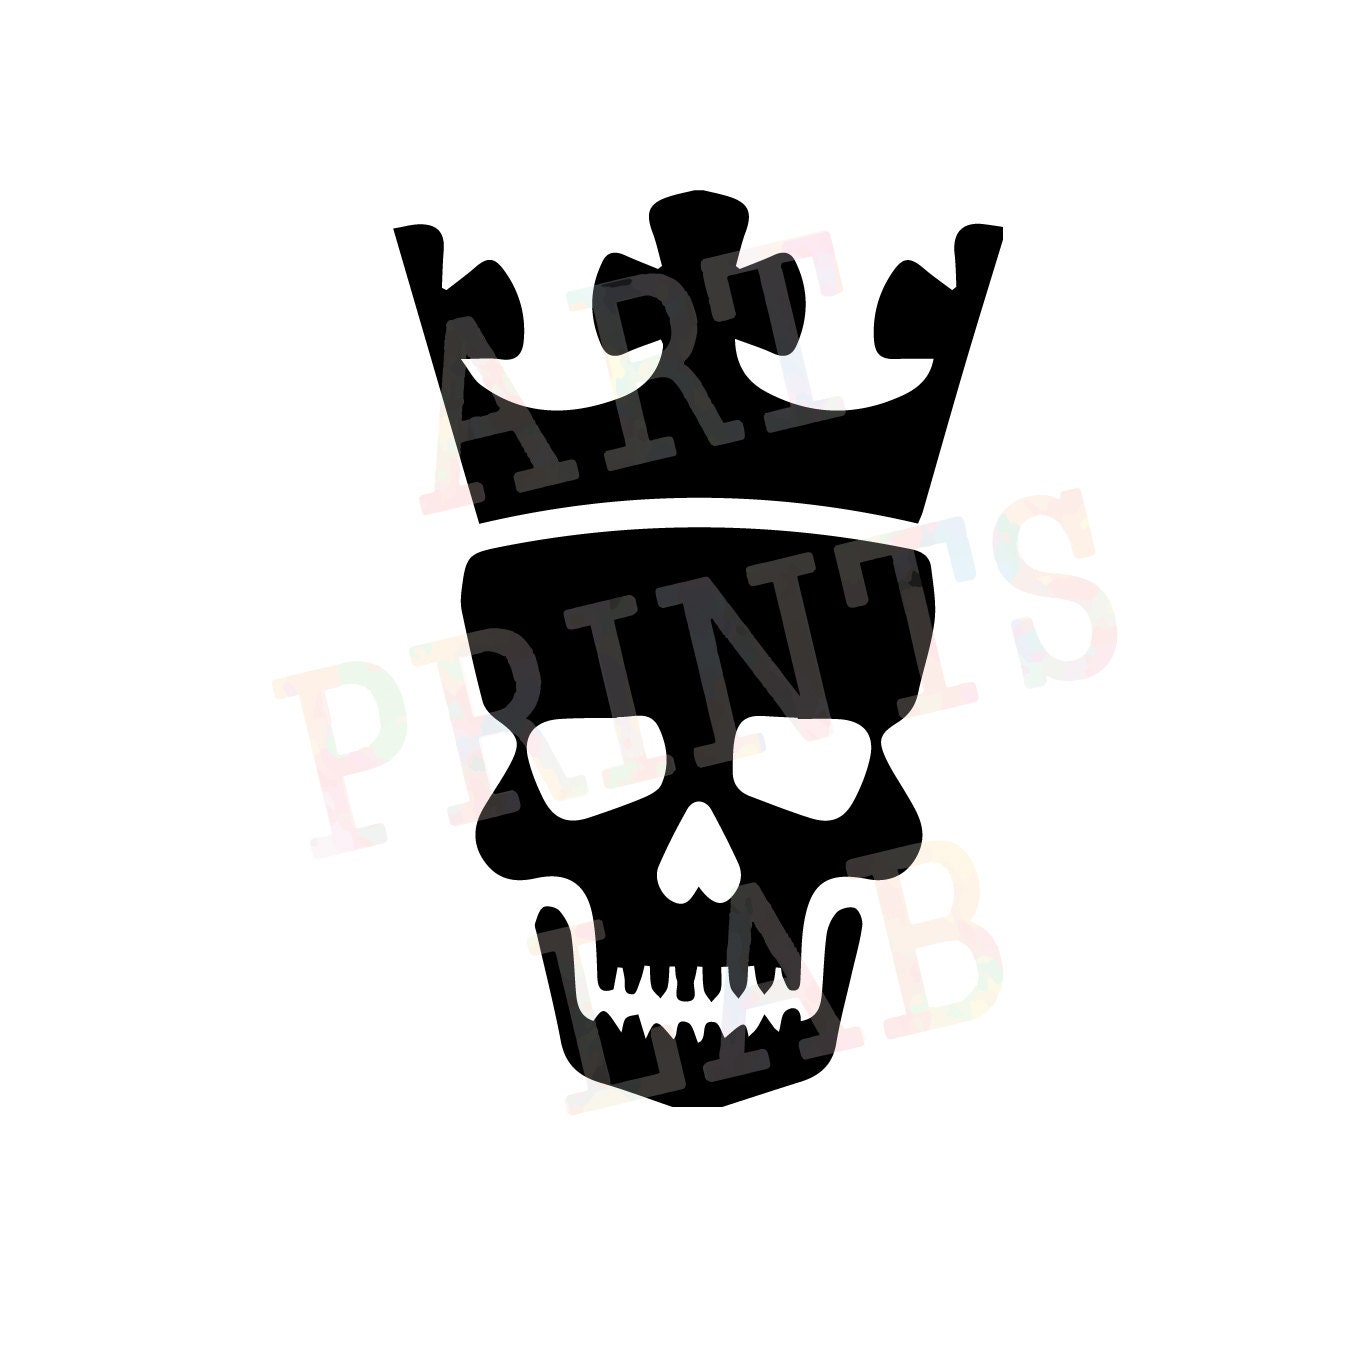 King skull svgKing skull crown eps King skull silhouette